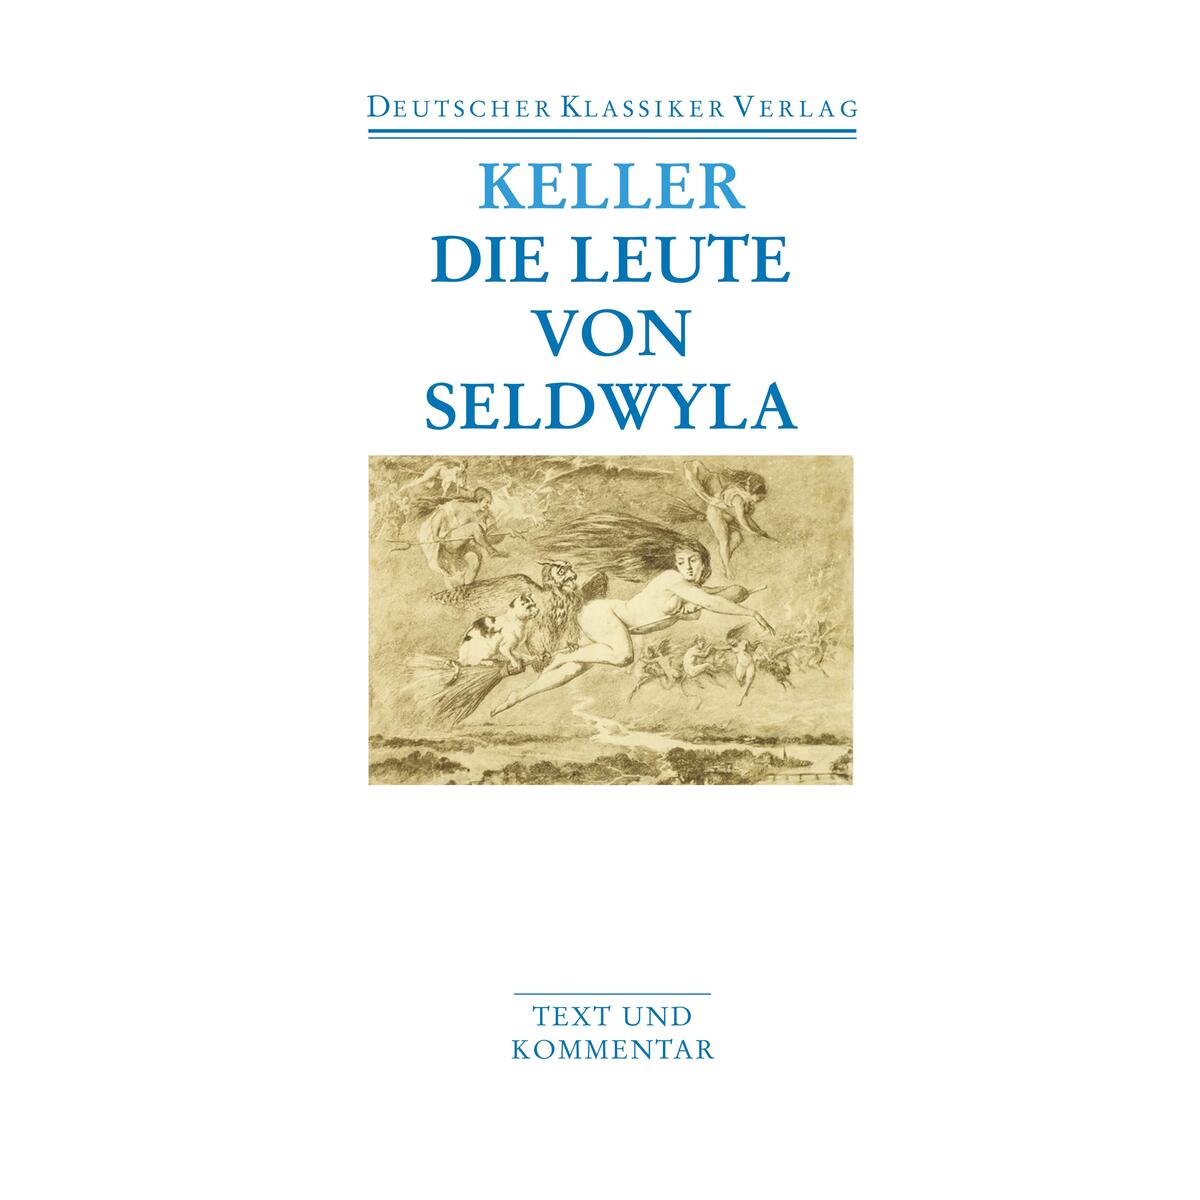 Die Leute von Seldwyla von Deutscher Klassikerverlag